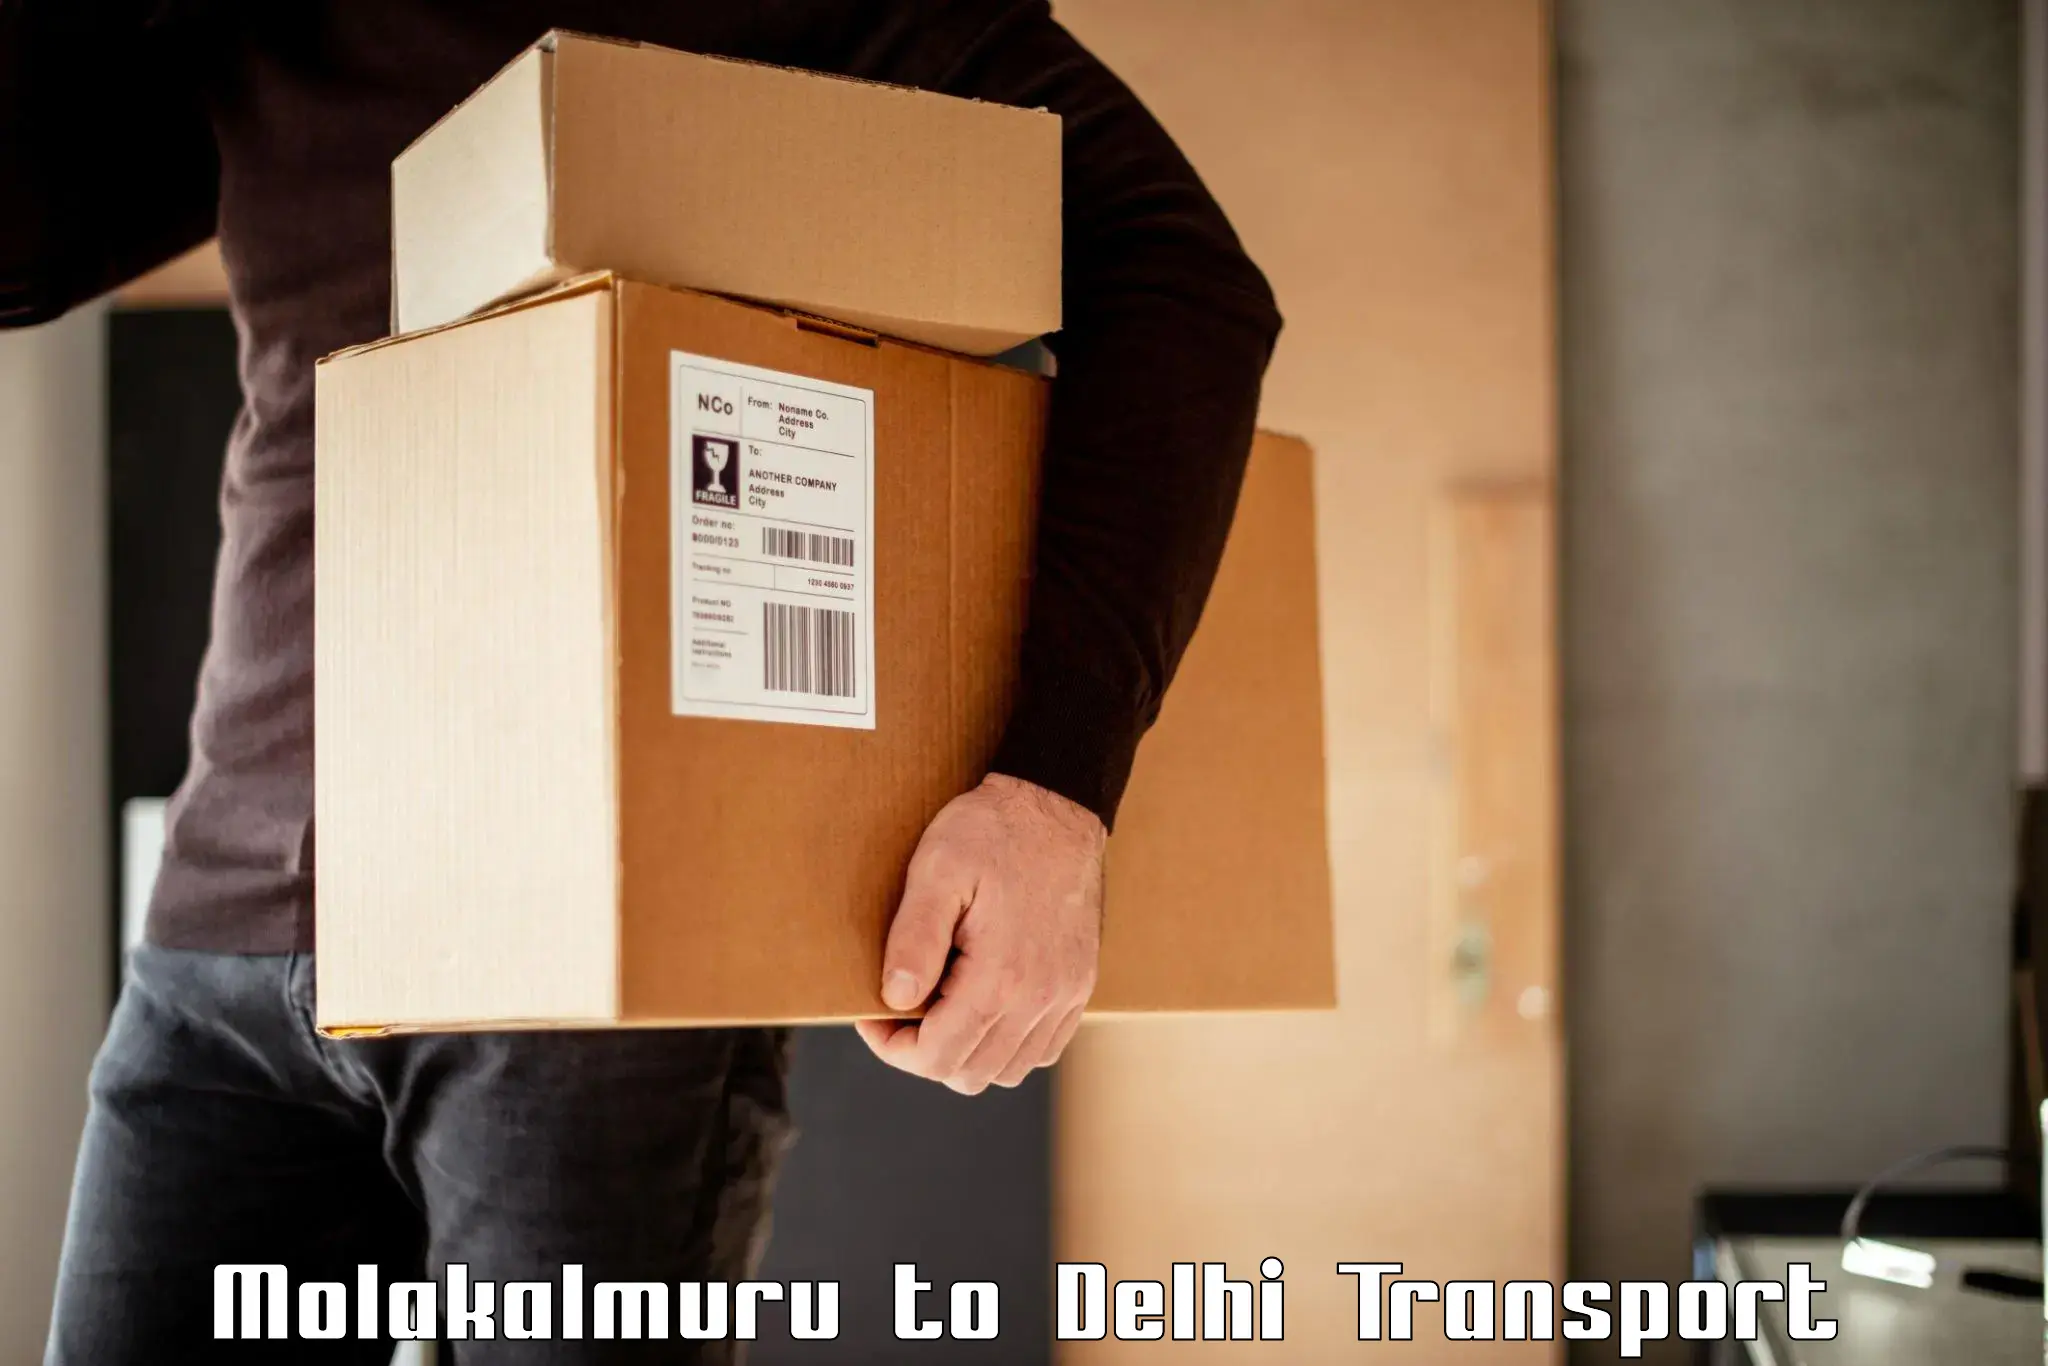 Shipping partner Molakalmuru to East Delhi